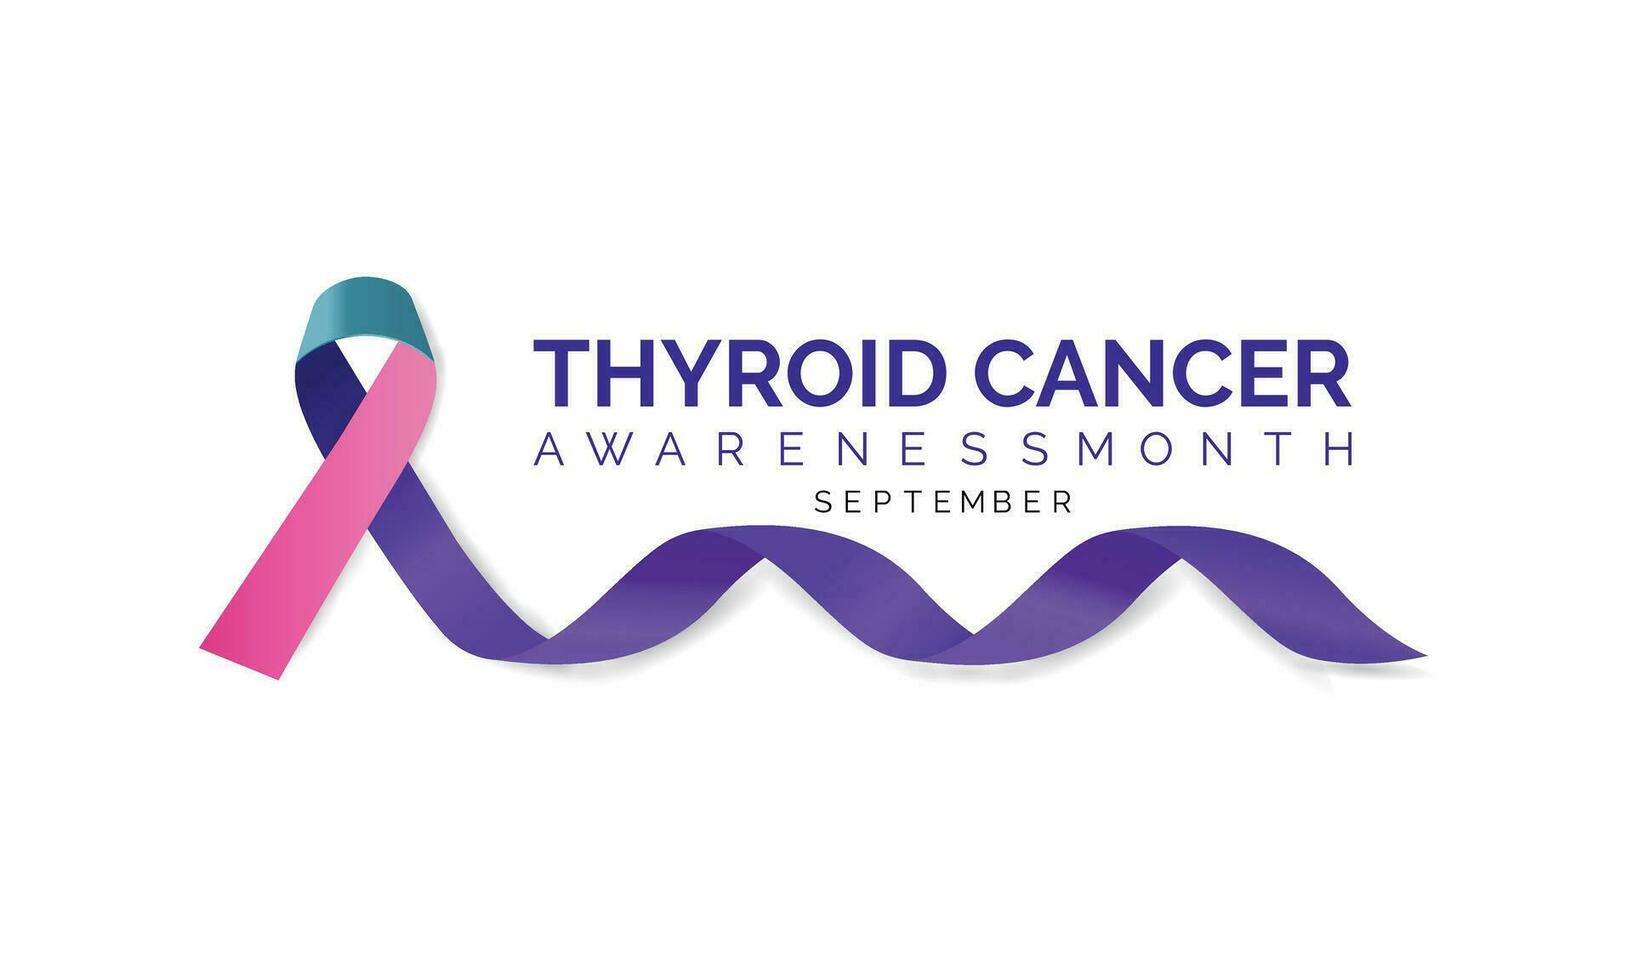 tiroide cancro consapevolezza mese settembre. calligrafia manifesto design. realistico alzavola e rosa e blu nastro. settembre è cancro consapevolezza mese. vettore